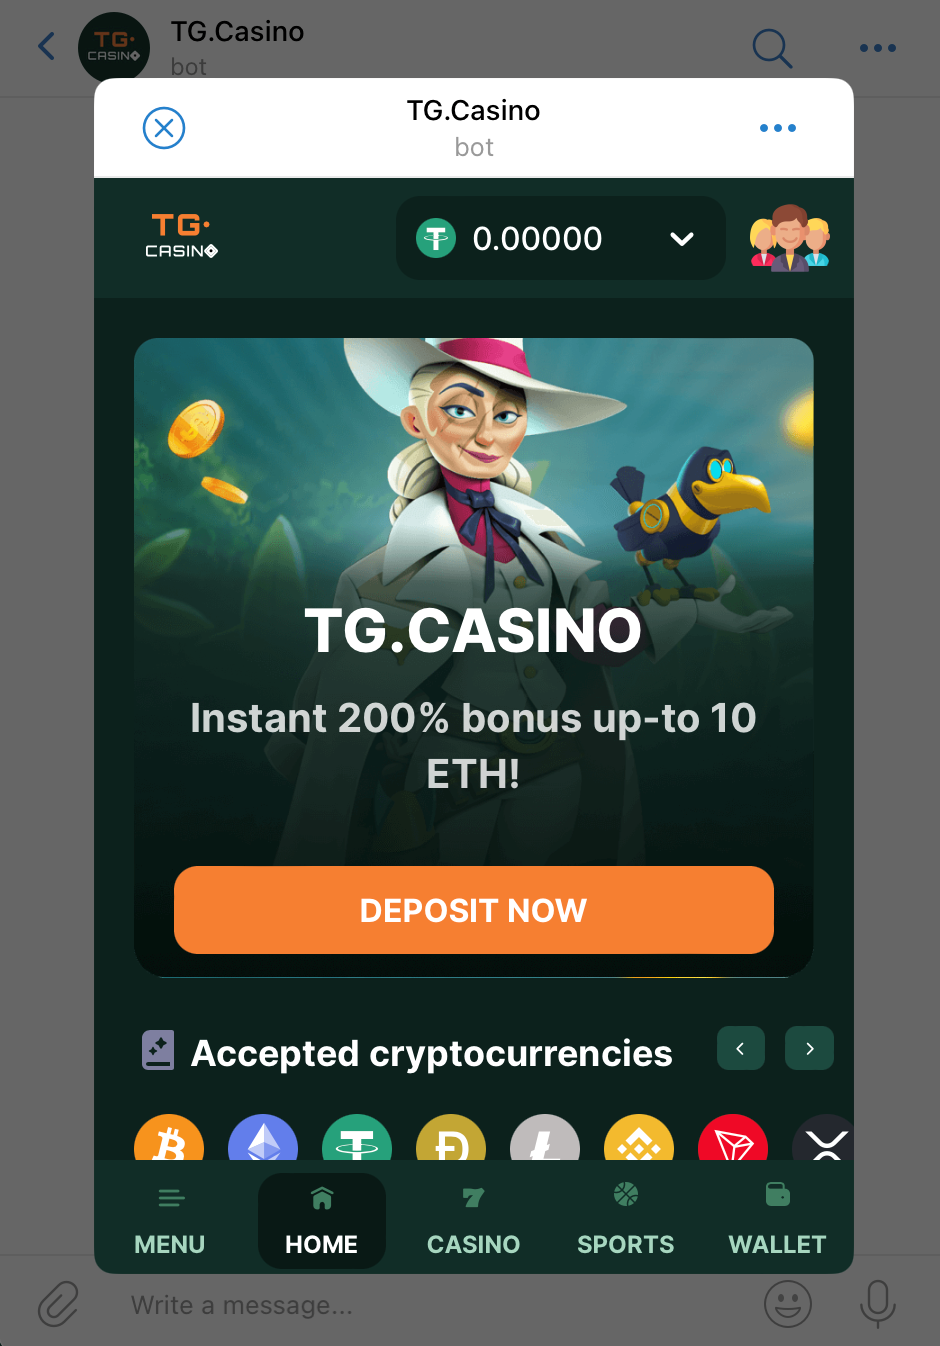 TG.Casino review | DeviceDaily.com